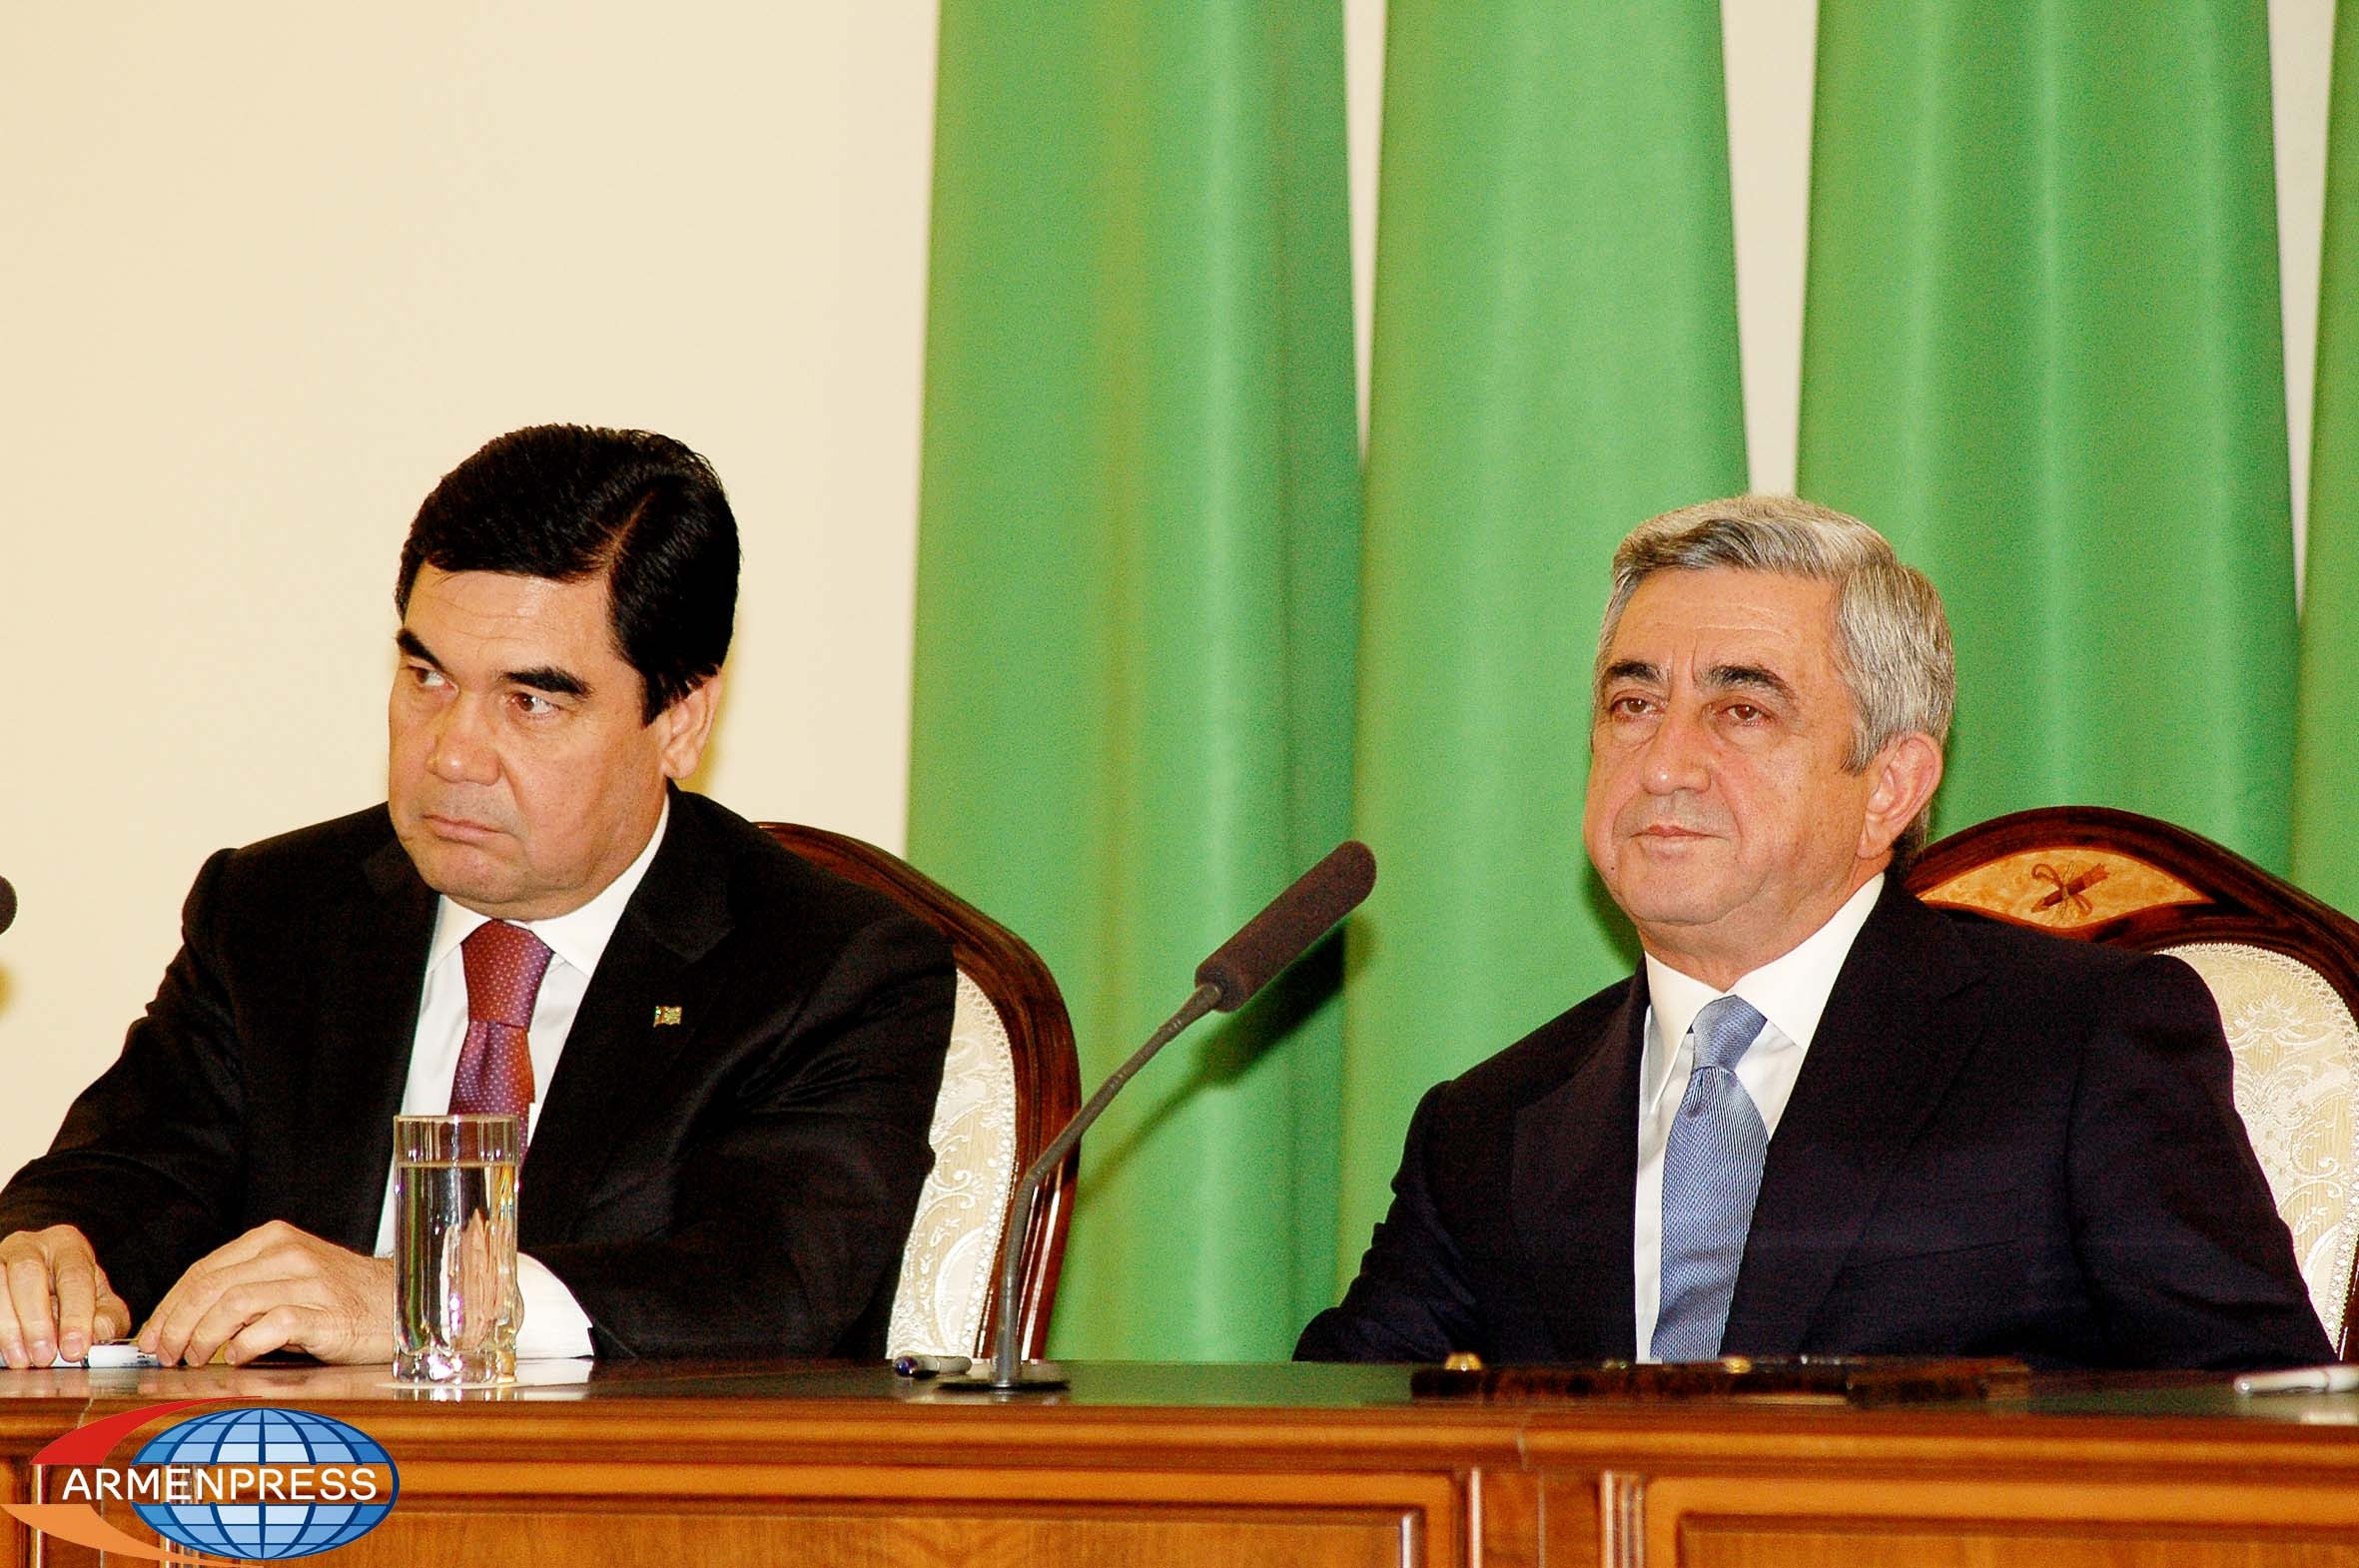 Թուրքմենստանի հետ օդային հաղորդակցության համագործակցության 
համաձայնագիրը նոր հեռանկարներ կբացի. ՀՀ Նախագահ 